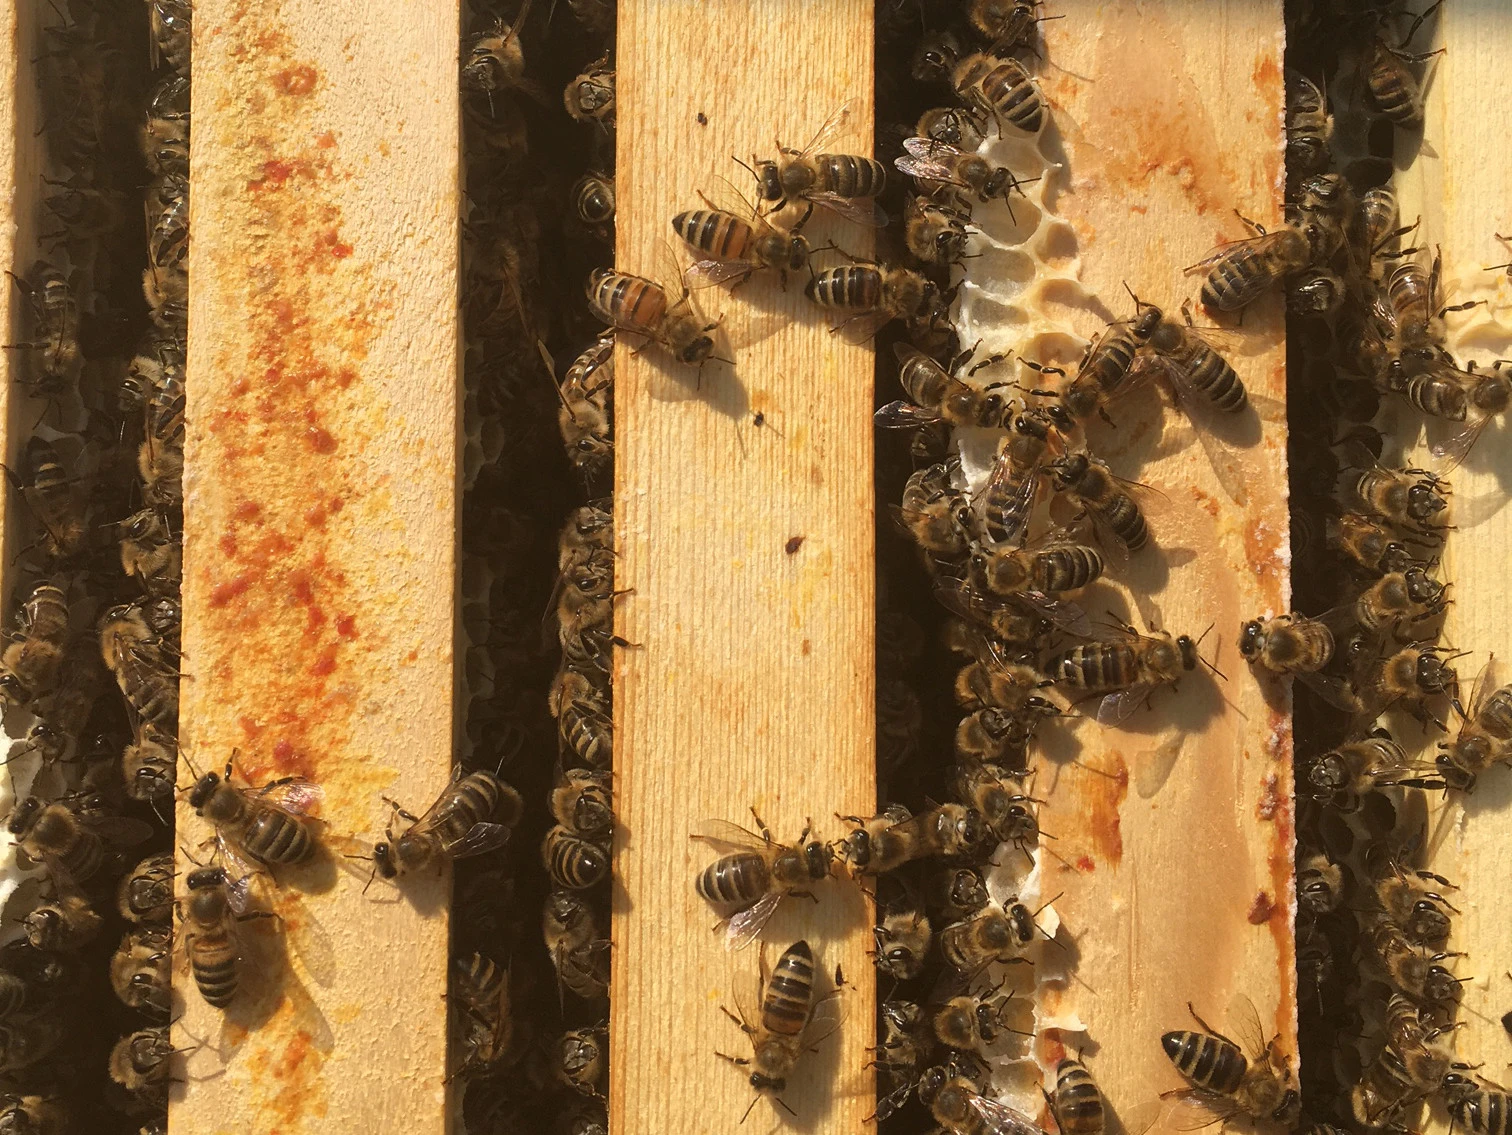 Allianz settles over 200,000 bees at Medienfabrik in Munich